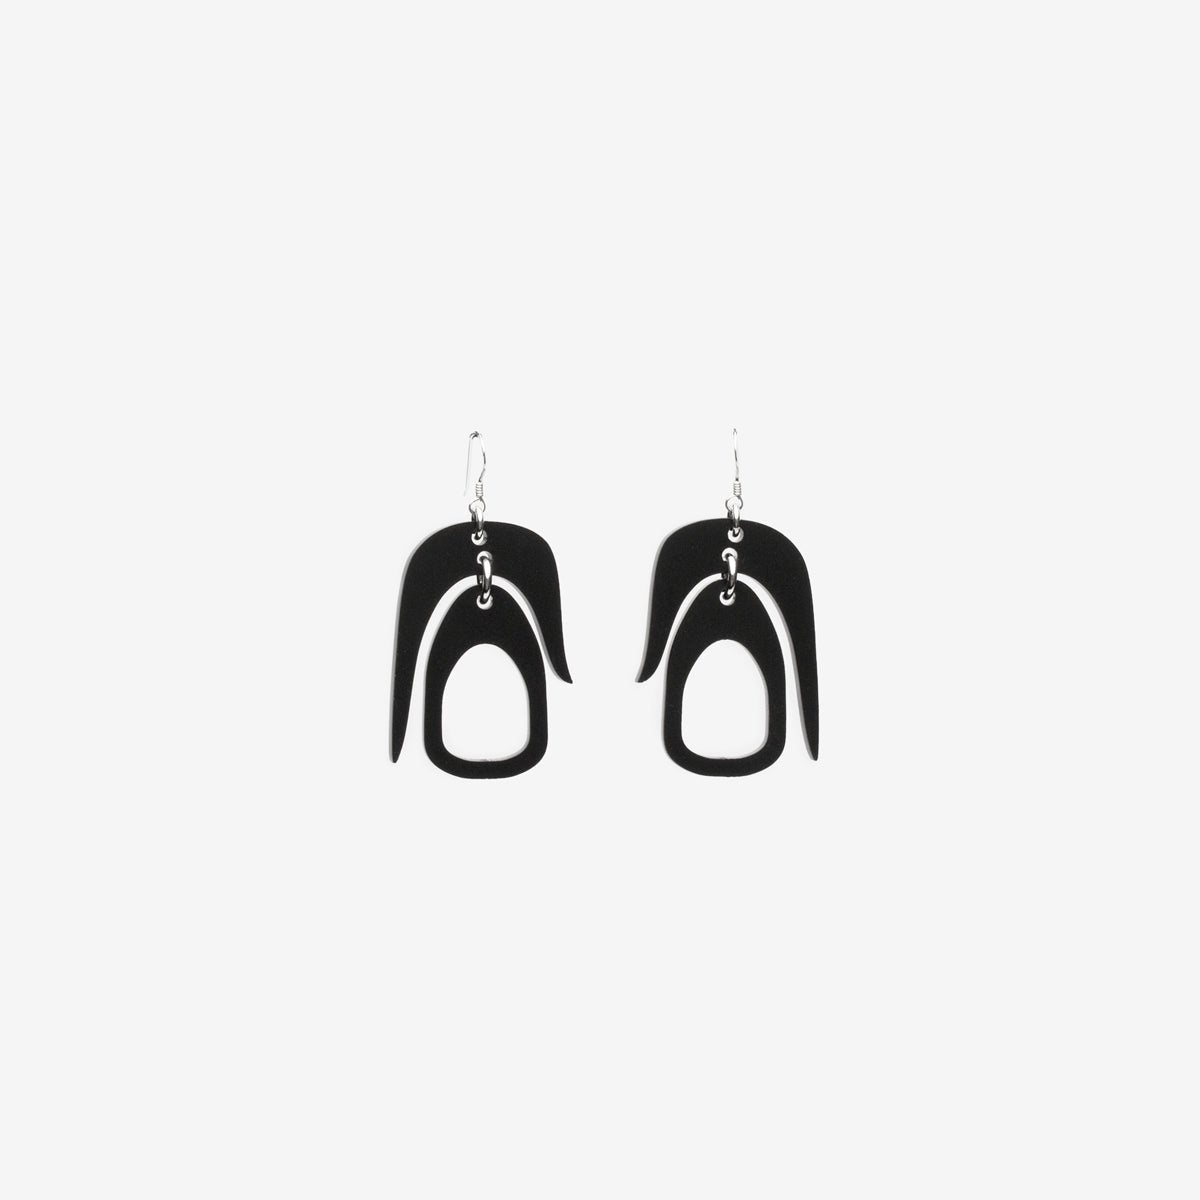 Salish Chandelier Mini Earrings in Black. Made in Canada by Warren Steven Scott.